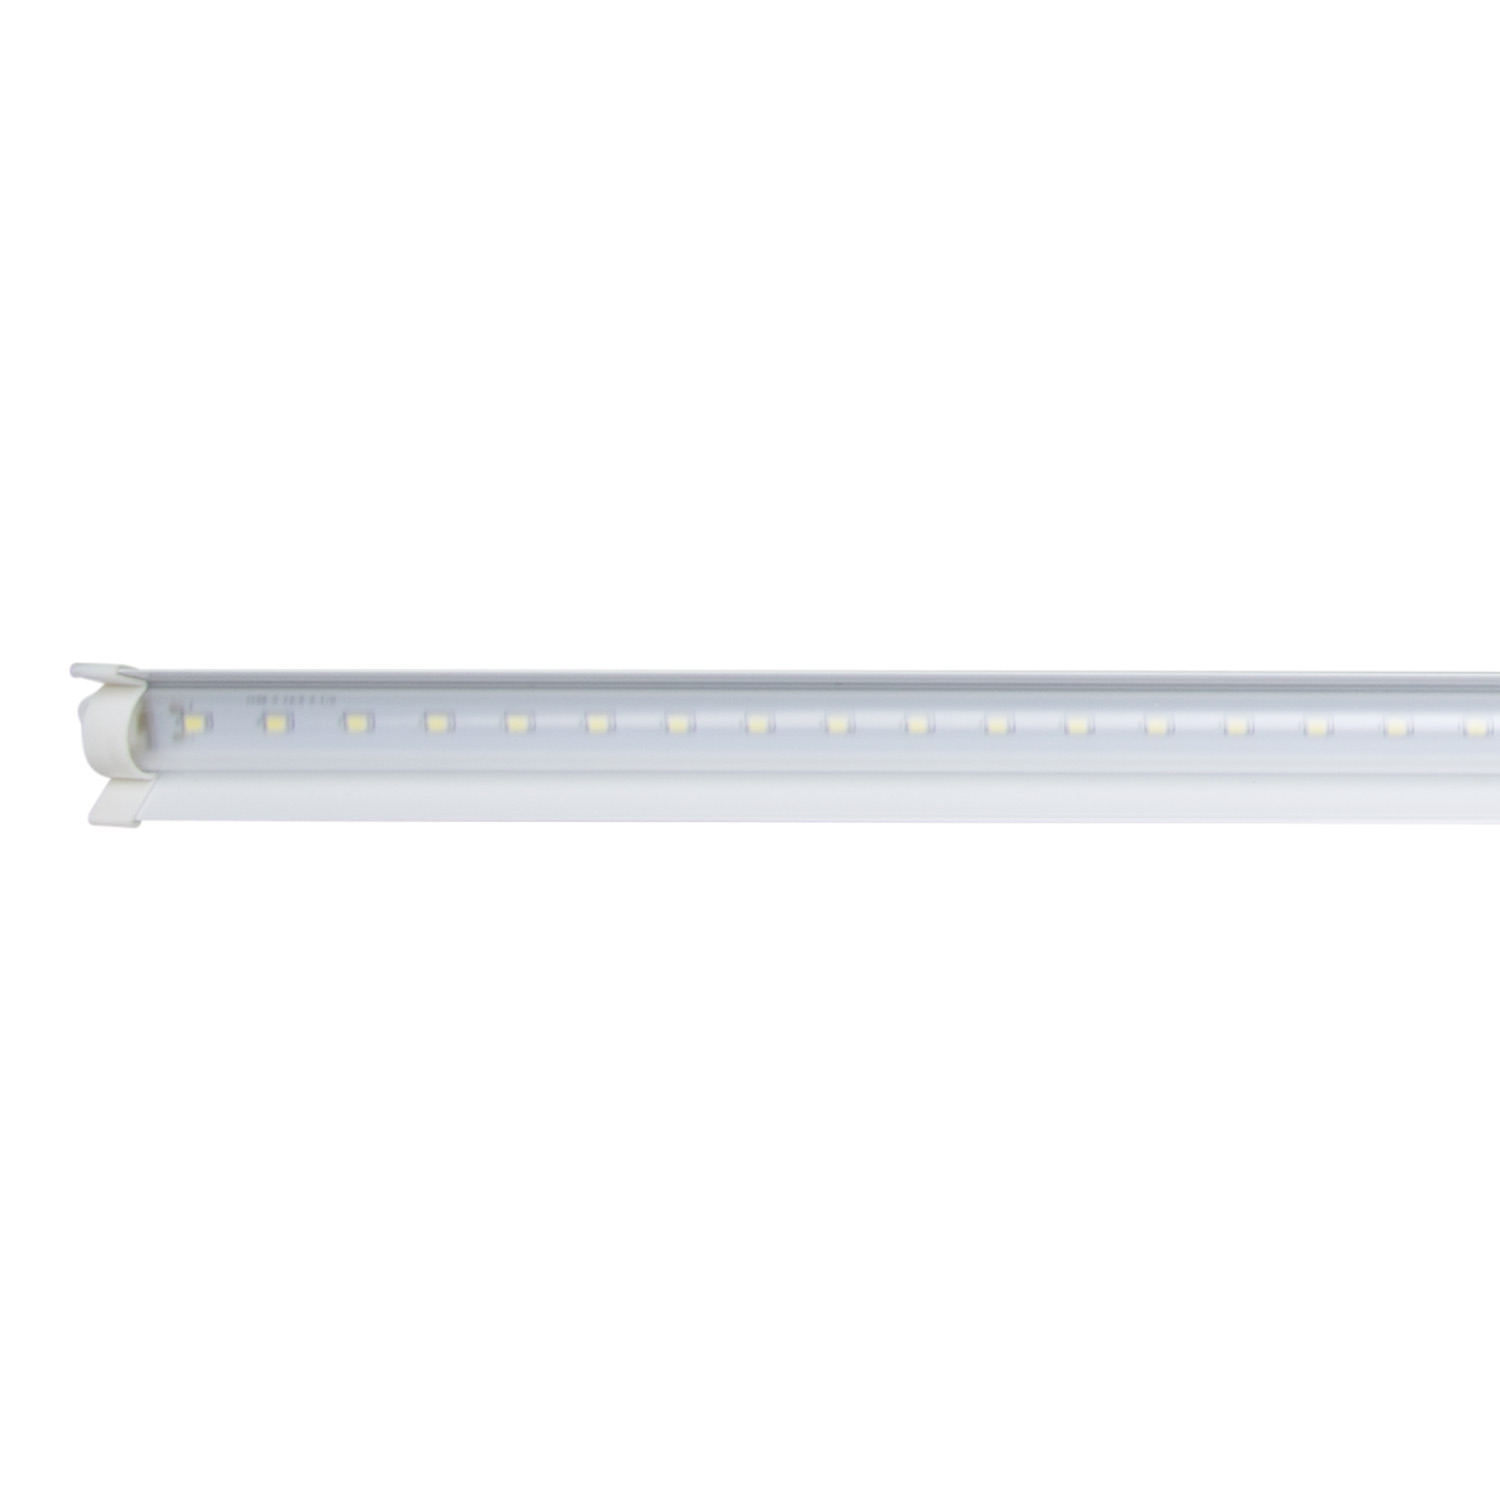 Đèn LED ChuyênDụng Trồng Rau, Nuôi Cấy Mô Chính Hãng Rạng Đông Model: D NCM02L 60 10 W